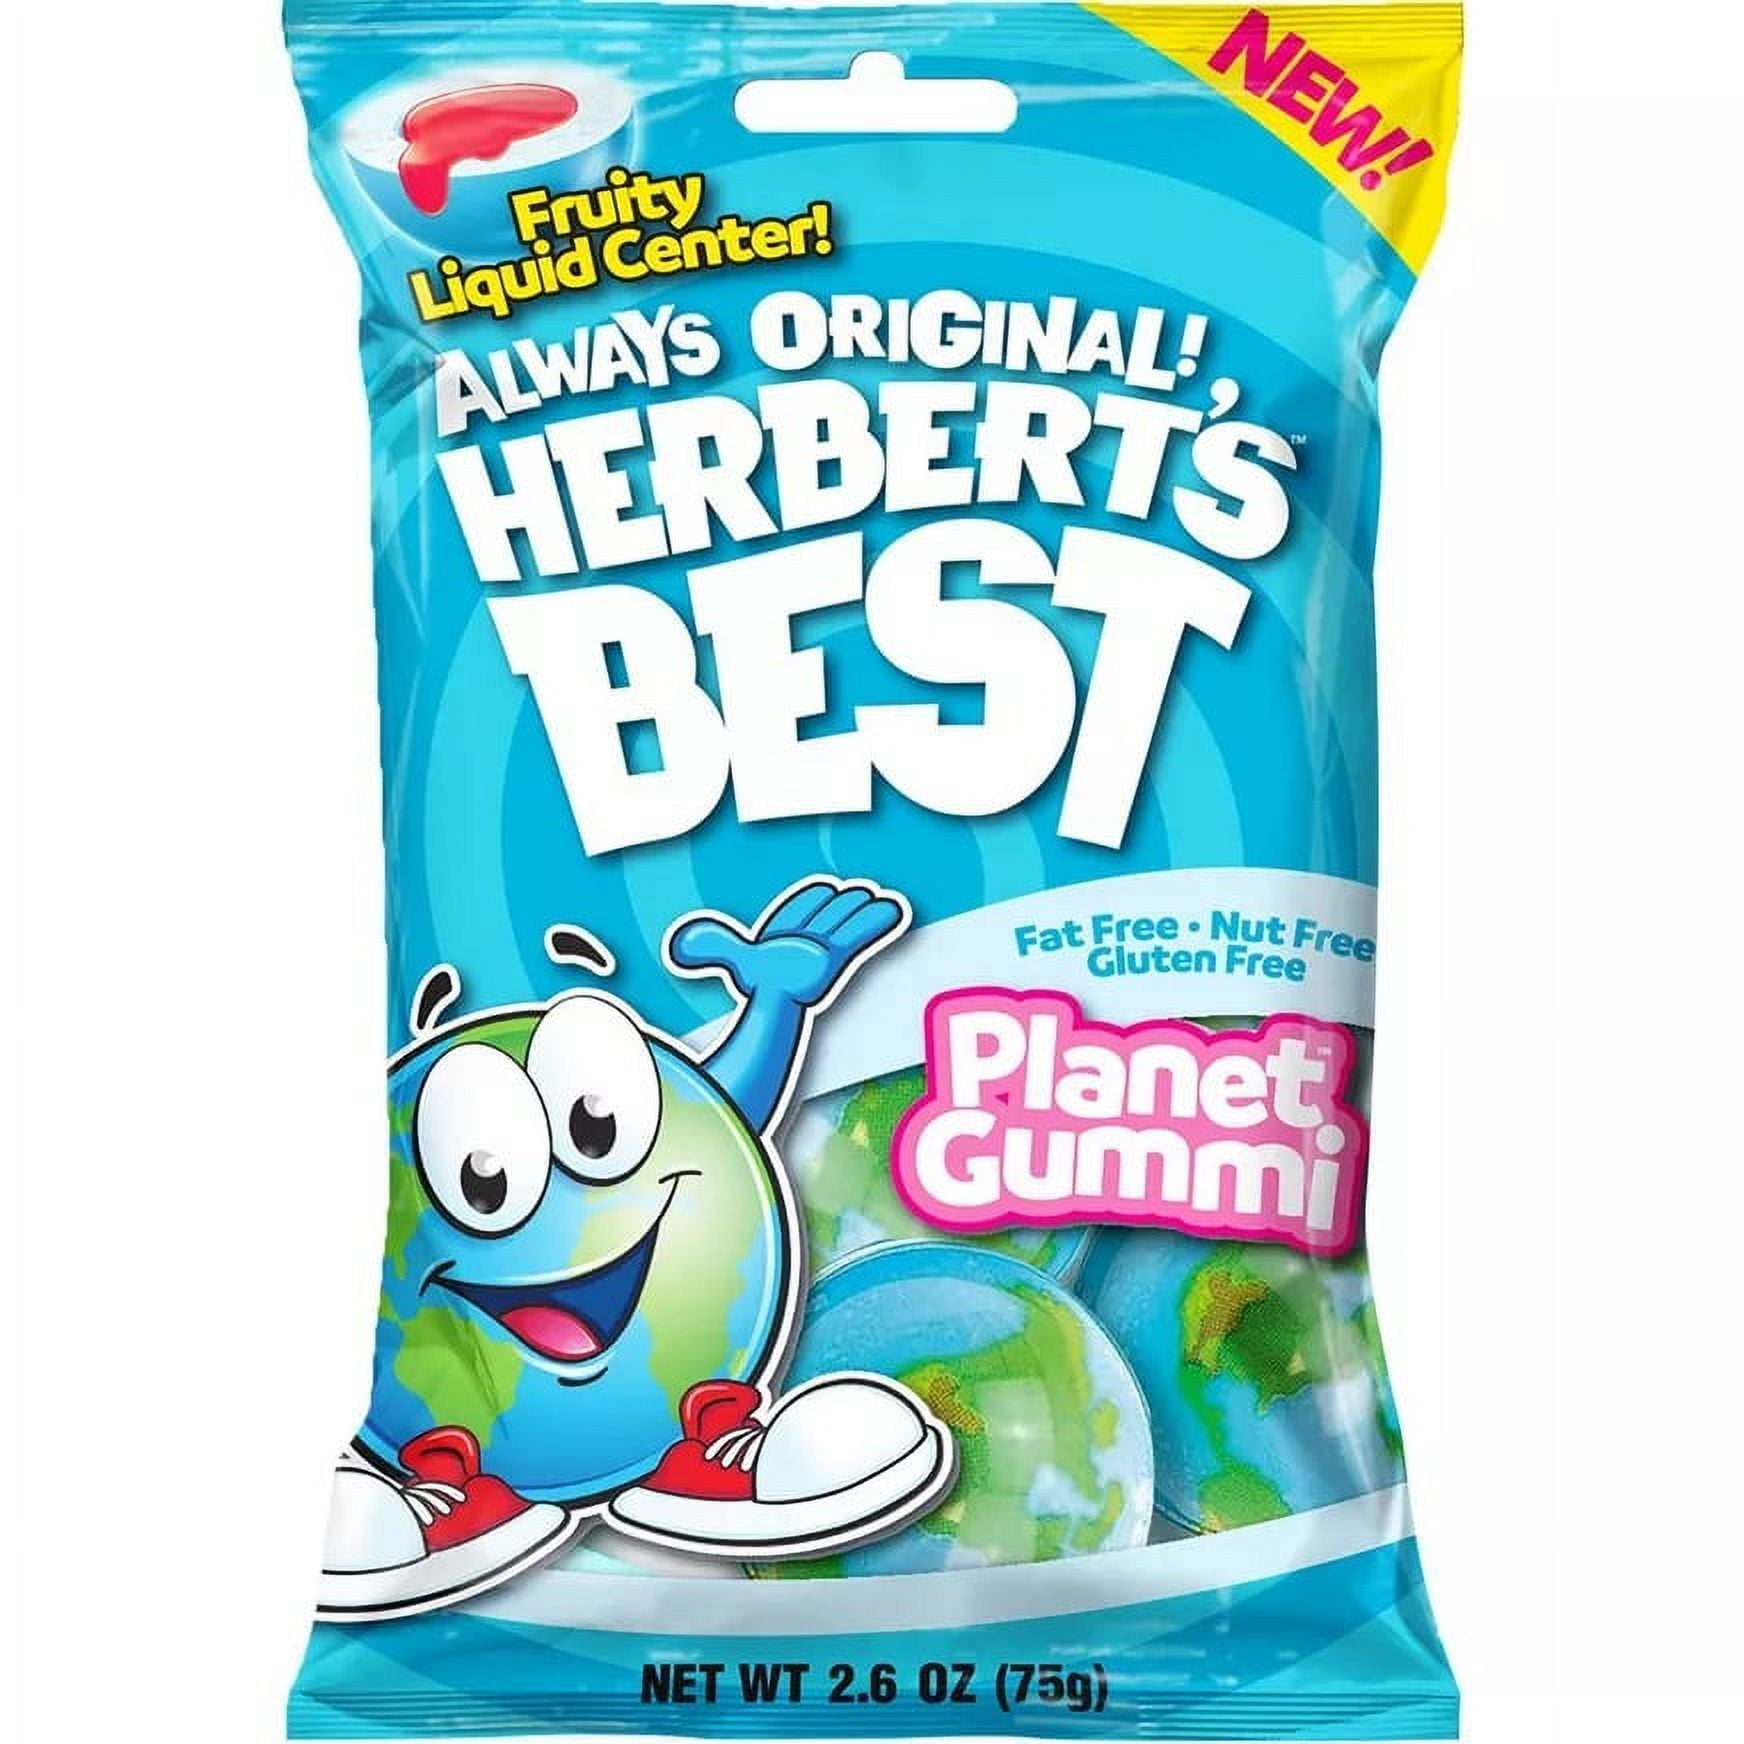 Herbert's Best Planet Gummi 2.6 oz. Bag